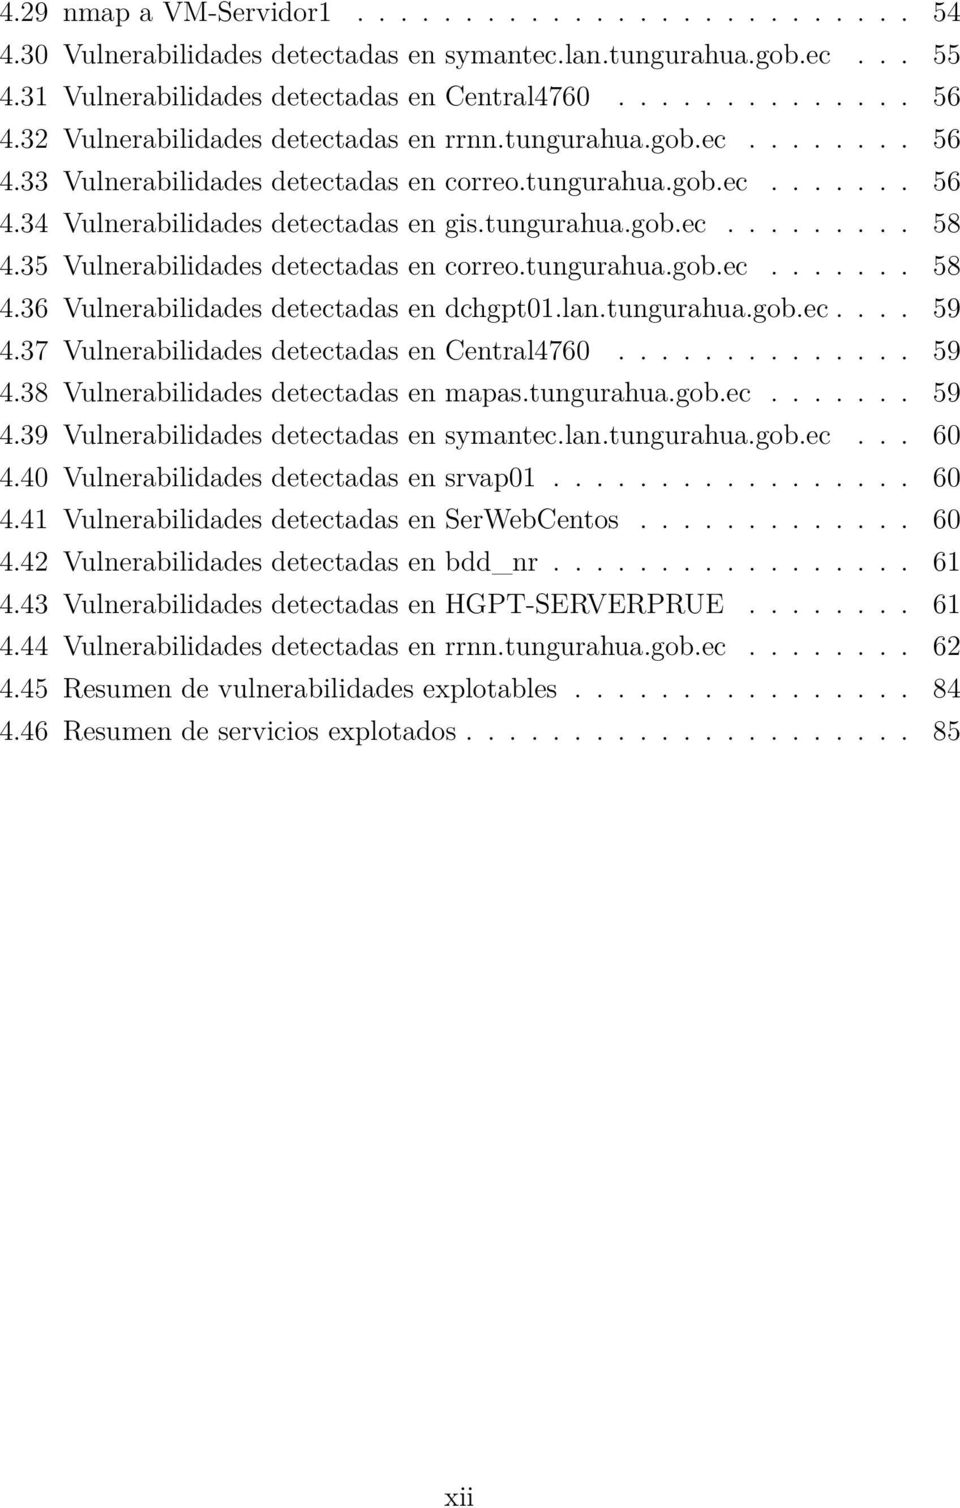 35 Vulnerabilidades detectadas en correo.tungurahua.gob.ec....... 58 4.36 Vulnerabilidades detectadas en dchgpt01.lan.tungurahua.gob.ec.... 59 4.37 Vulnerabilidades detectadas en Central4760.............. 59 4.38 Vulnerabilidades detectadas en mapas.